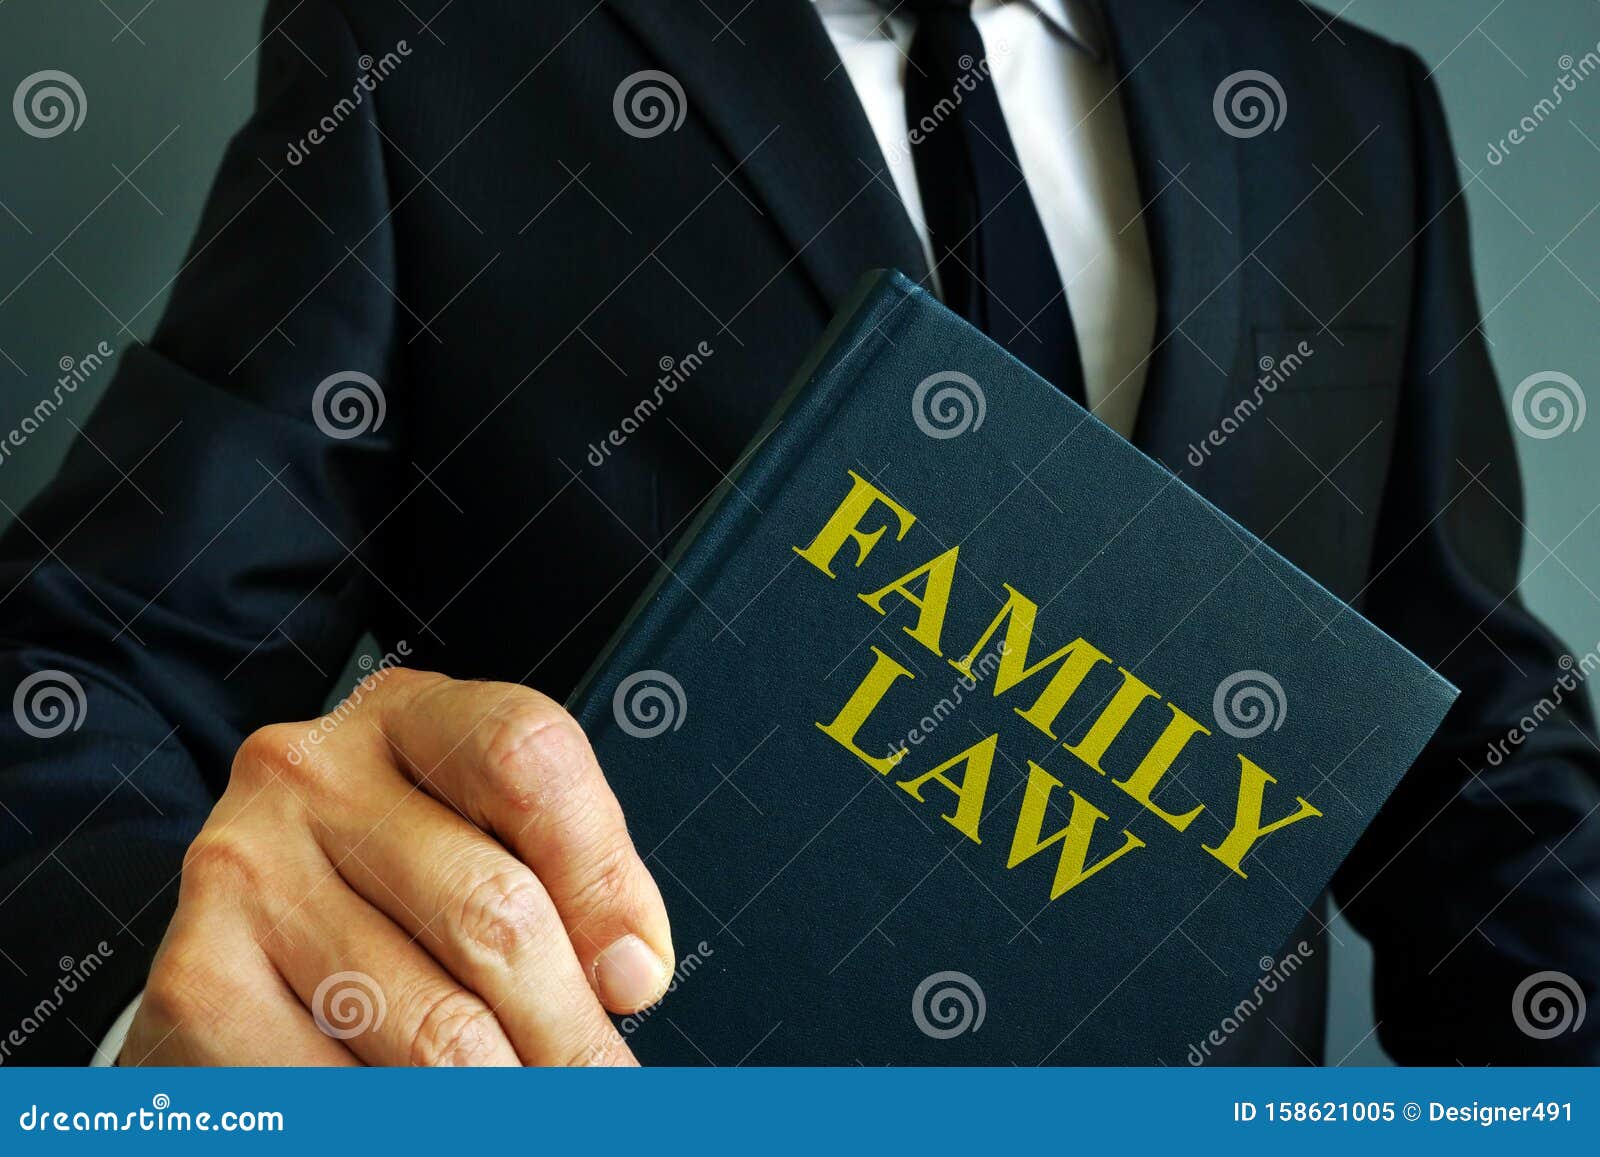 divorce law book